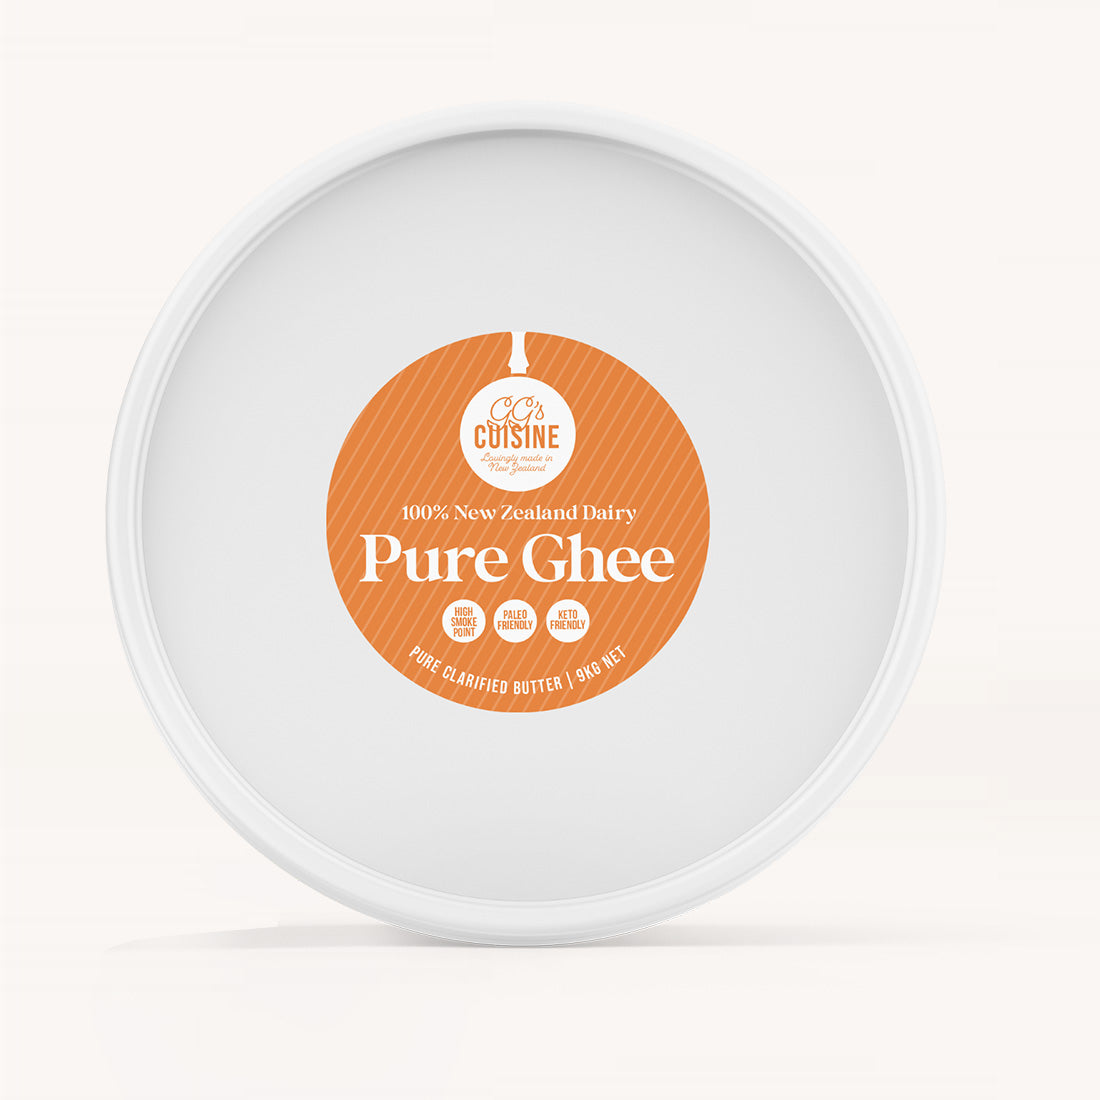 
                  
                    GG’s Pure Ghee 9kg
                  
                